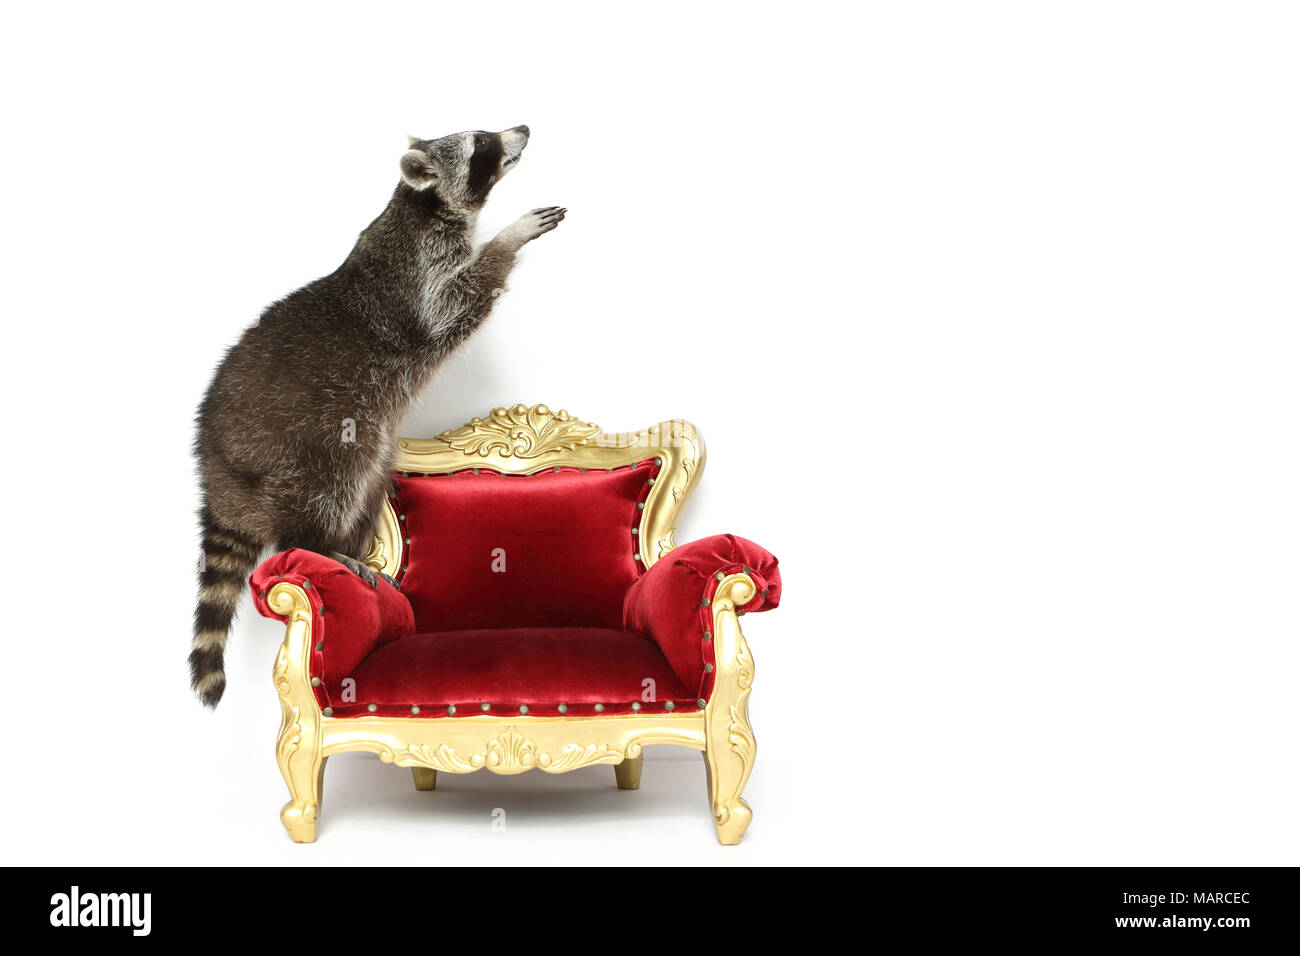 Mapache (Procyon lotor). Adulto de pie sobre un sillón barroco. Studio picture contra un fondo blanco. Alemania Foto de stock